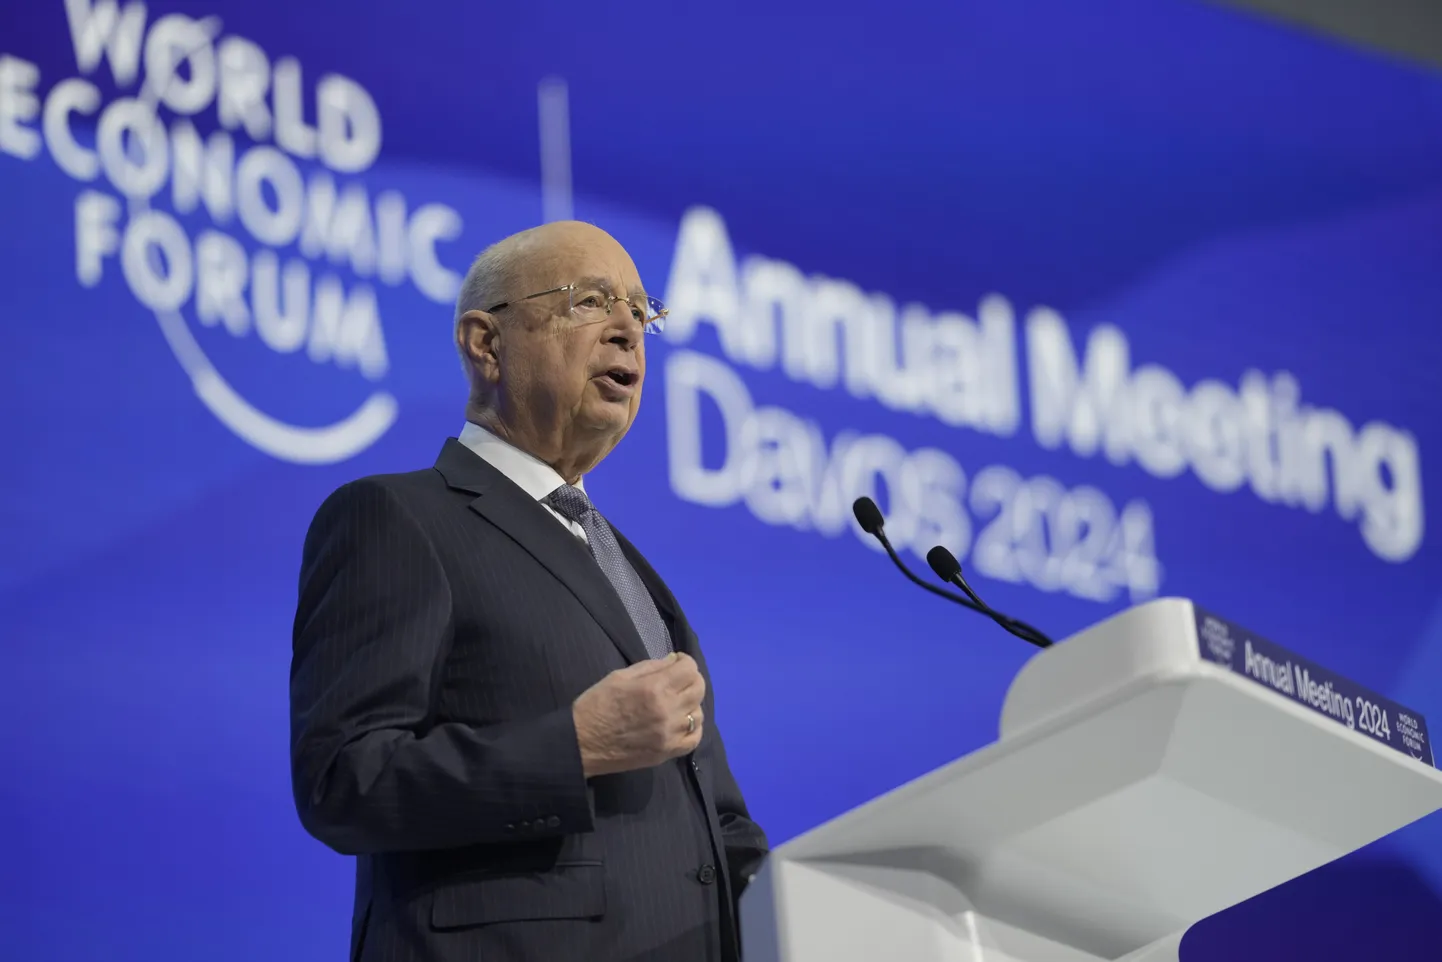 Maailma Majandusfoorumi (WEF) asutaja ja kauaaegne juht Klaus Schwab.